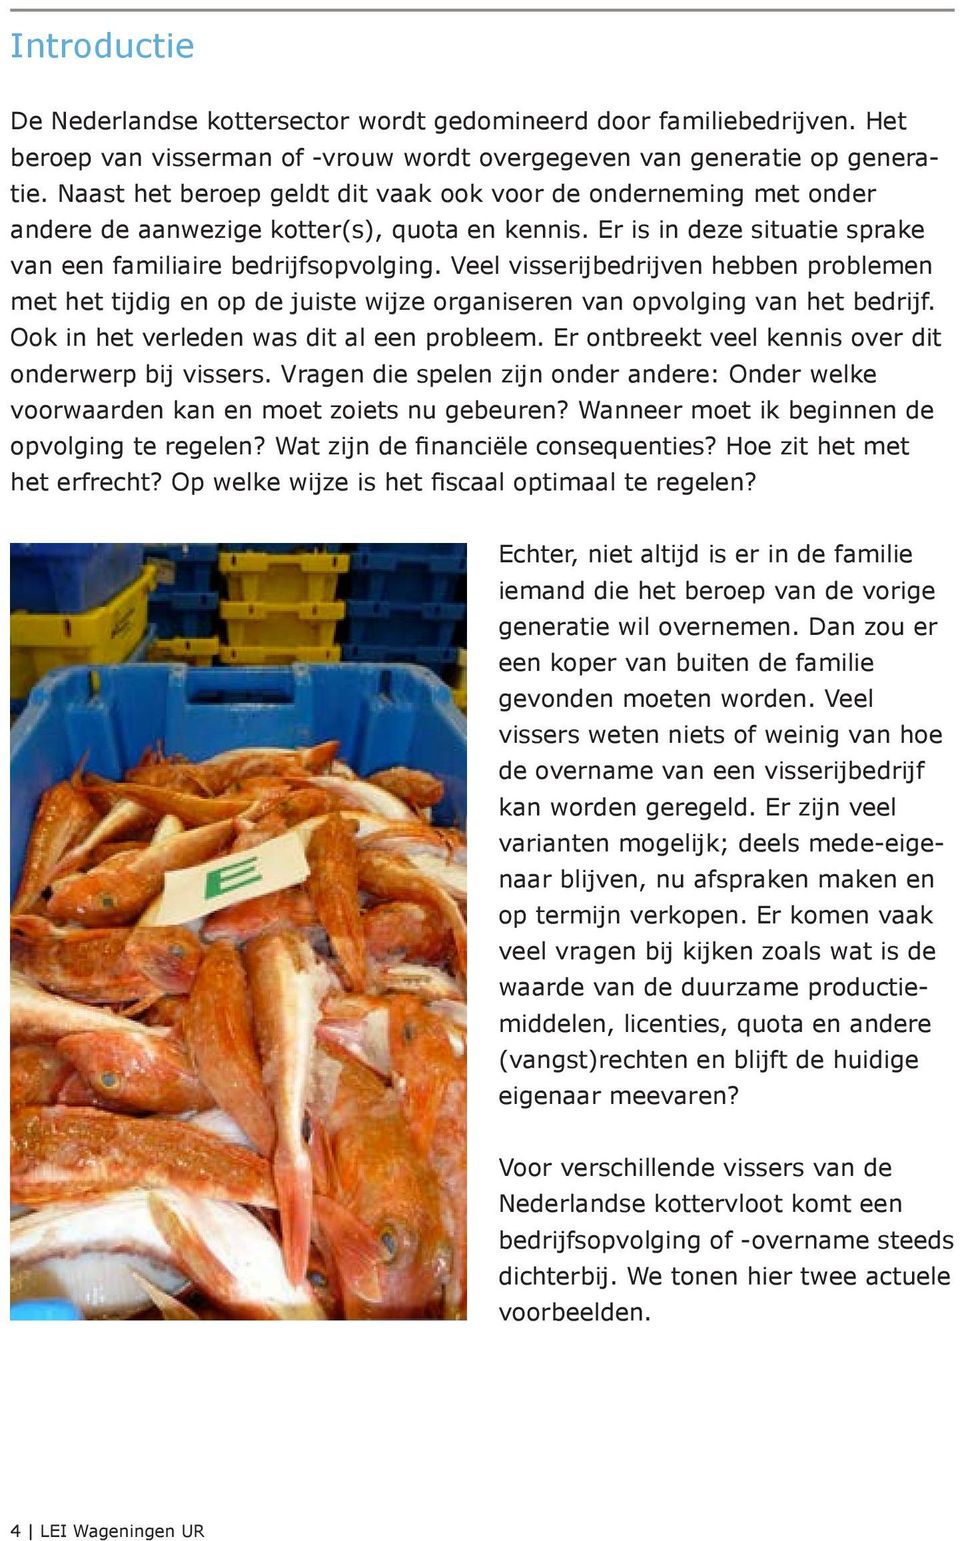 Veel visserijbedrijven hebben problemen met het tijdig en op de juiste wijze organiseren van opvolging van het bedrijf. Ook in het verleden was dit al een probleem.